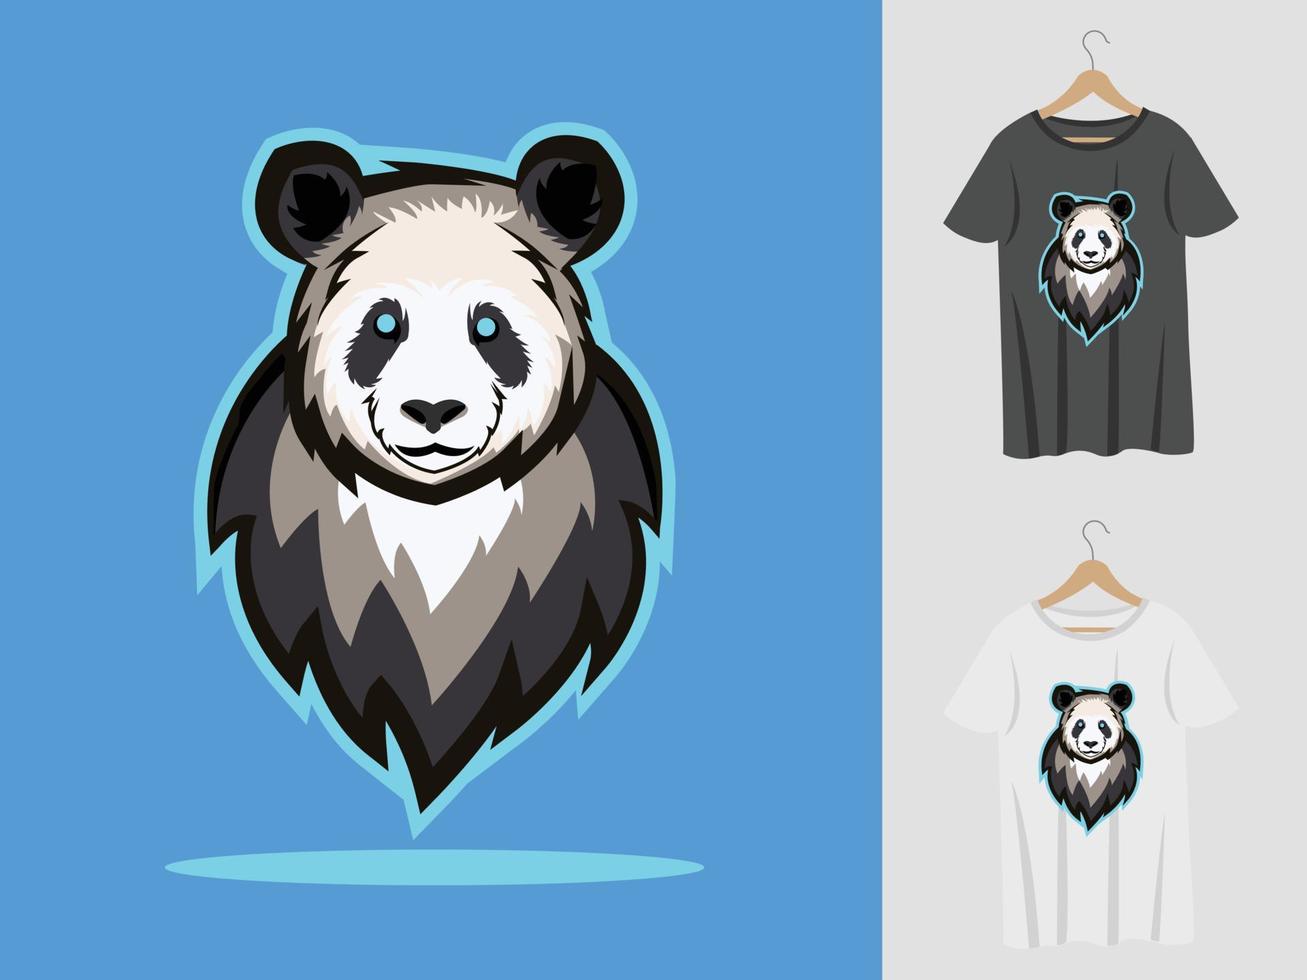 panda logo mascotte ontwerp met t-shirt. panda hoofd illustratie voor sportteam en bedrukking van t-shirt vector